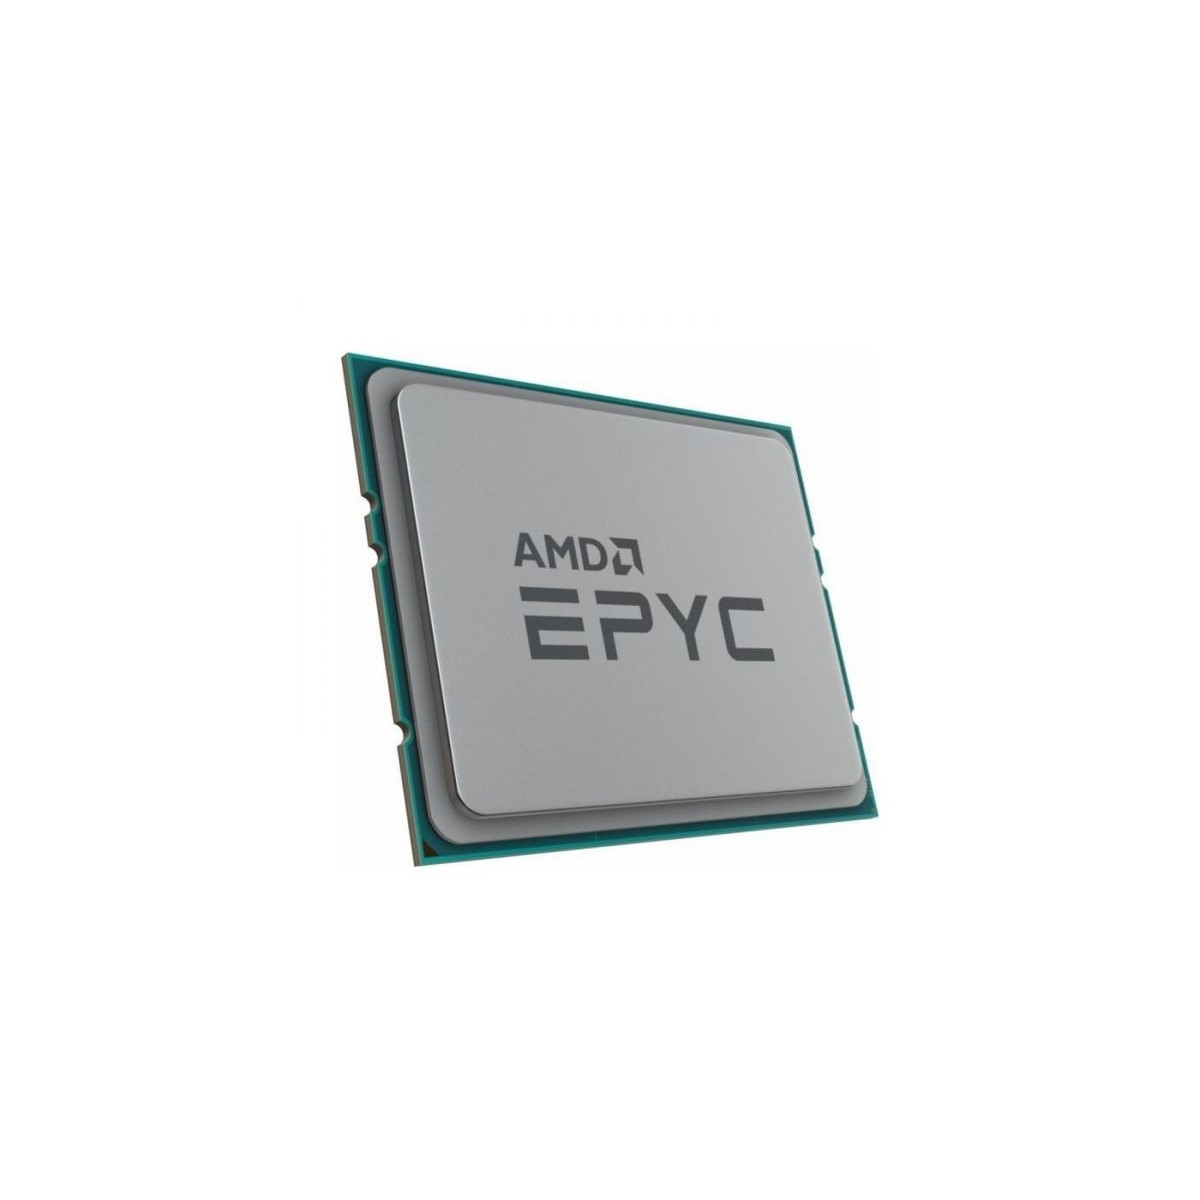 Lenovo ThinkSystem SR645 AMD EPYC 7262 8C - AMD EPYC - 3.2 GHz